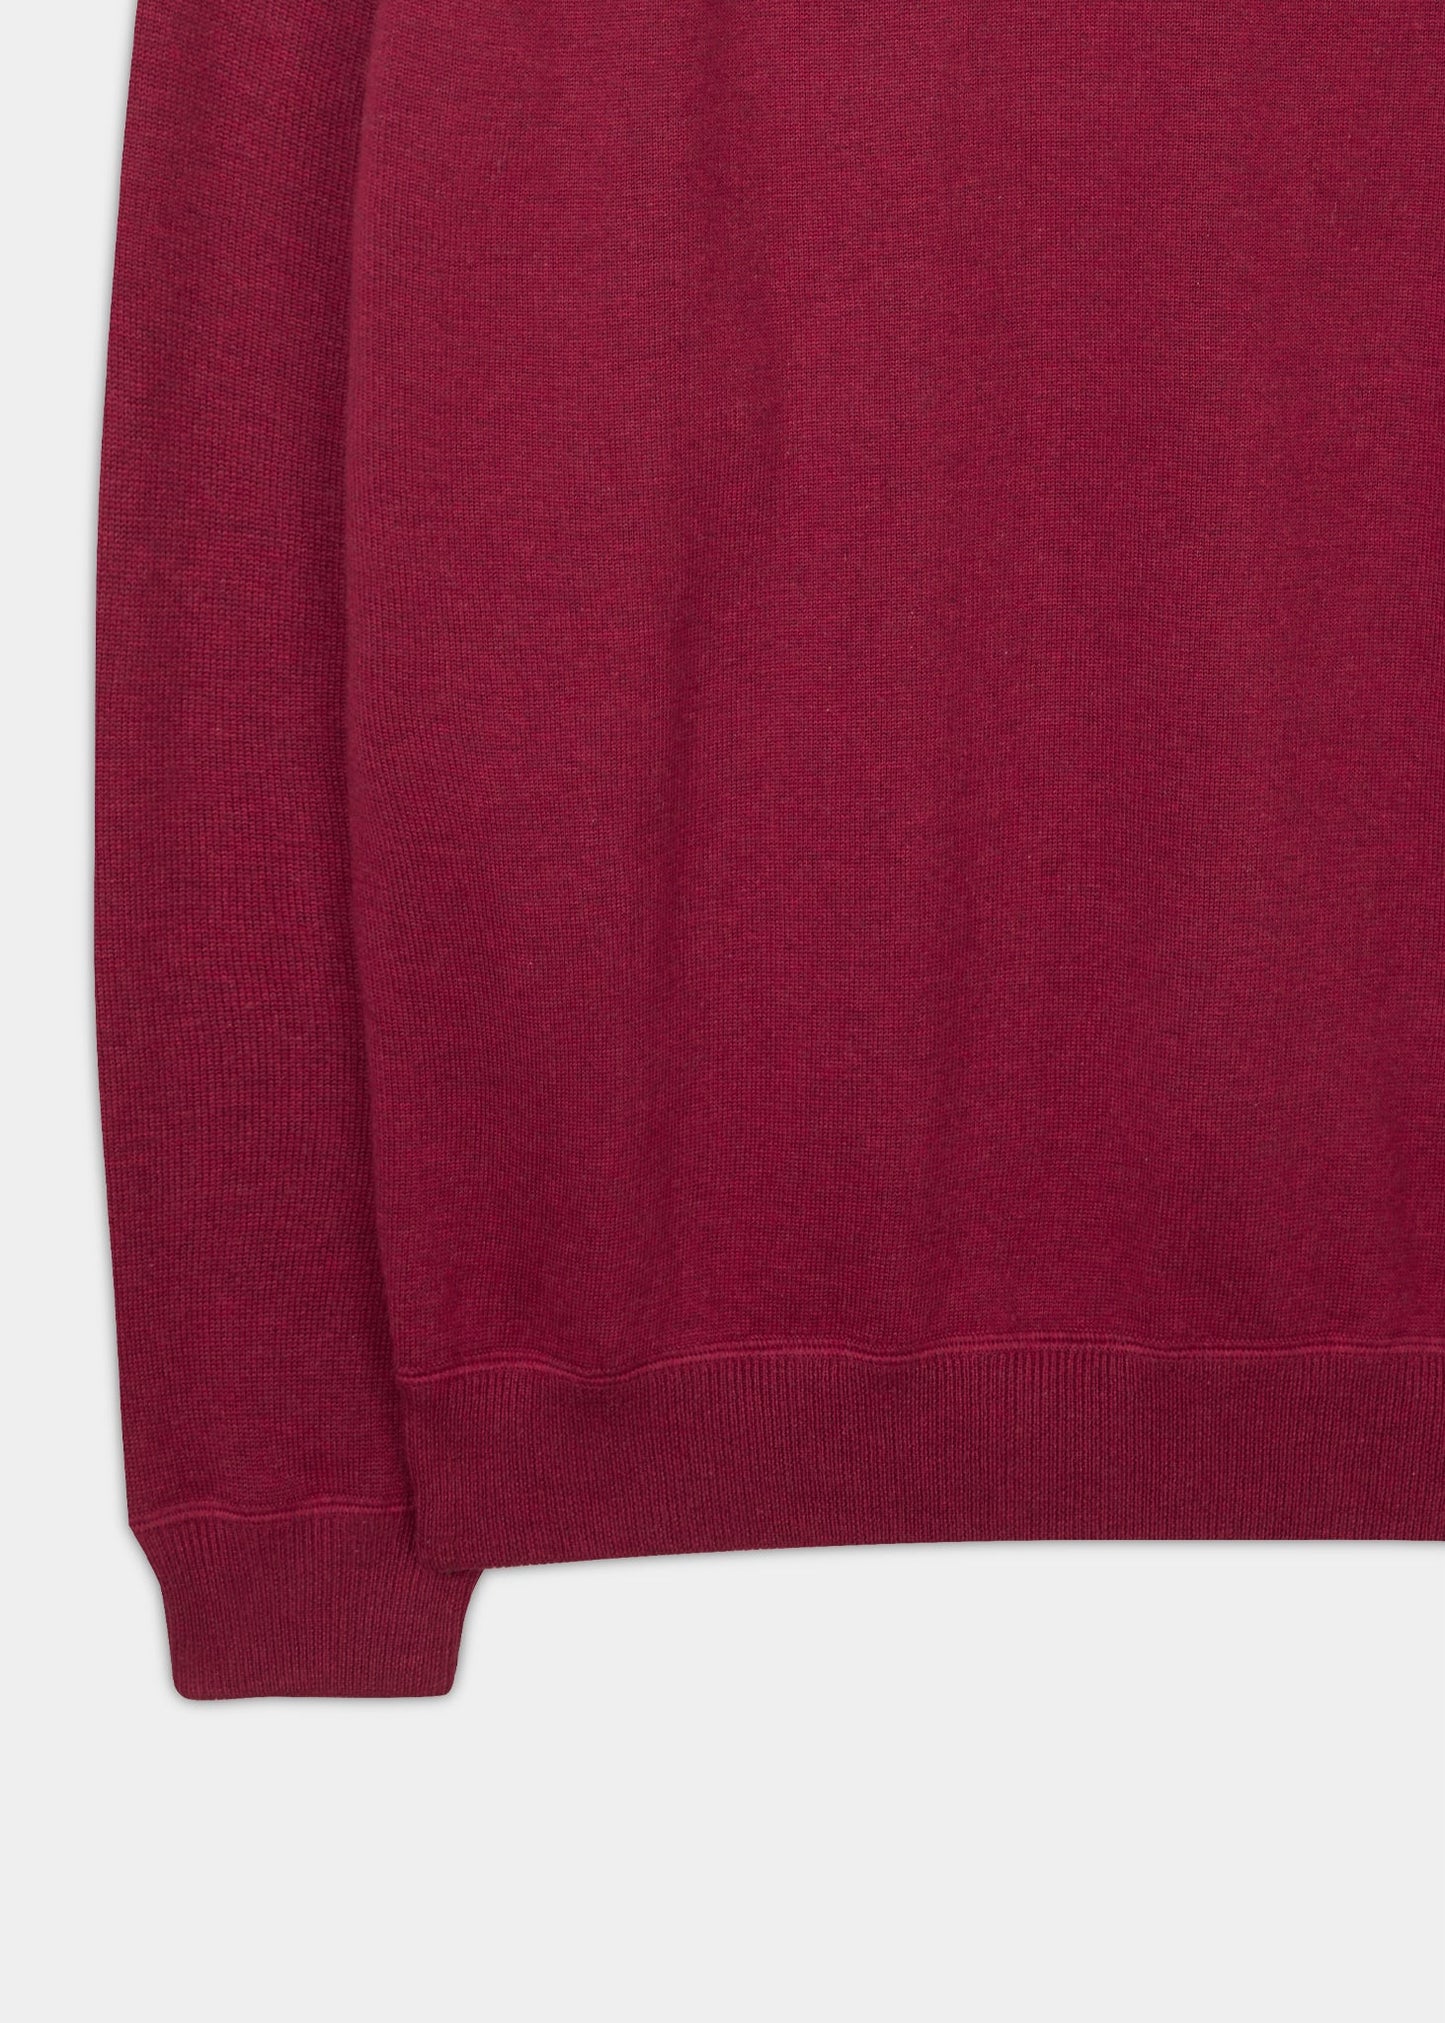 Men's cotton cashmere sweatshirt in colourway claret